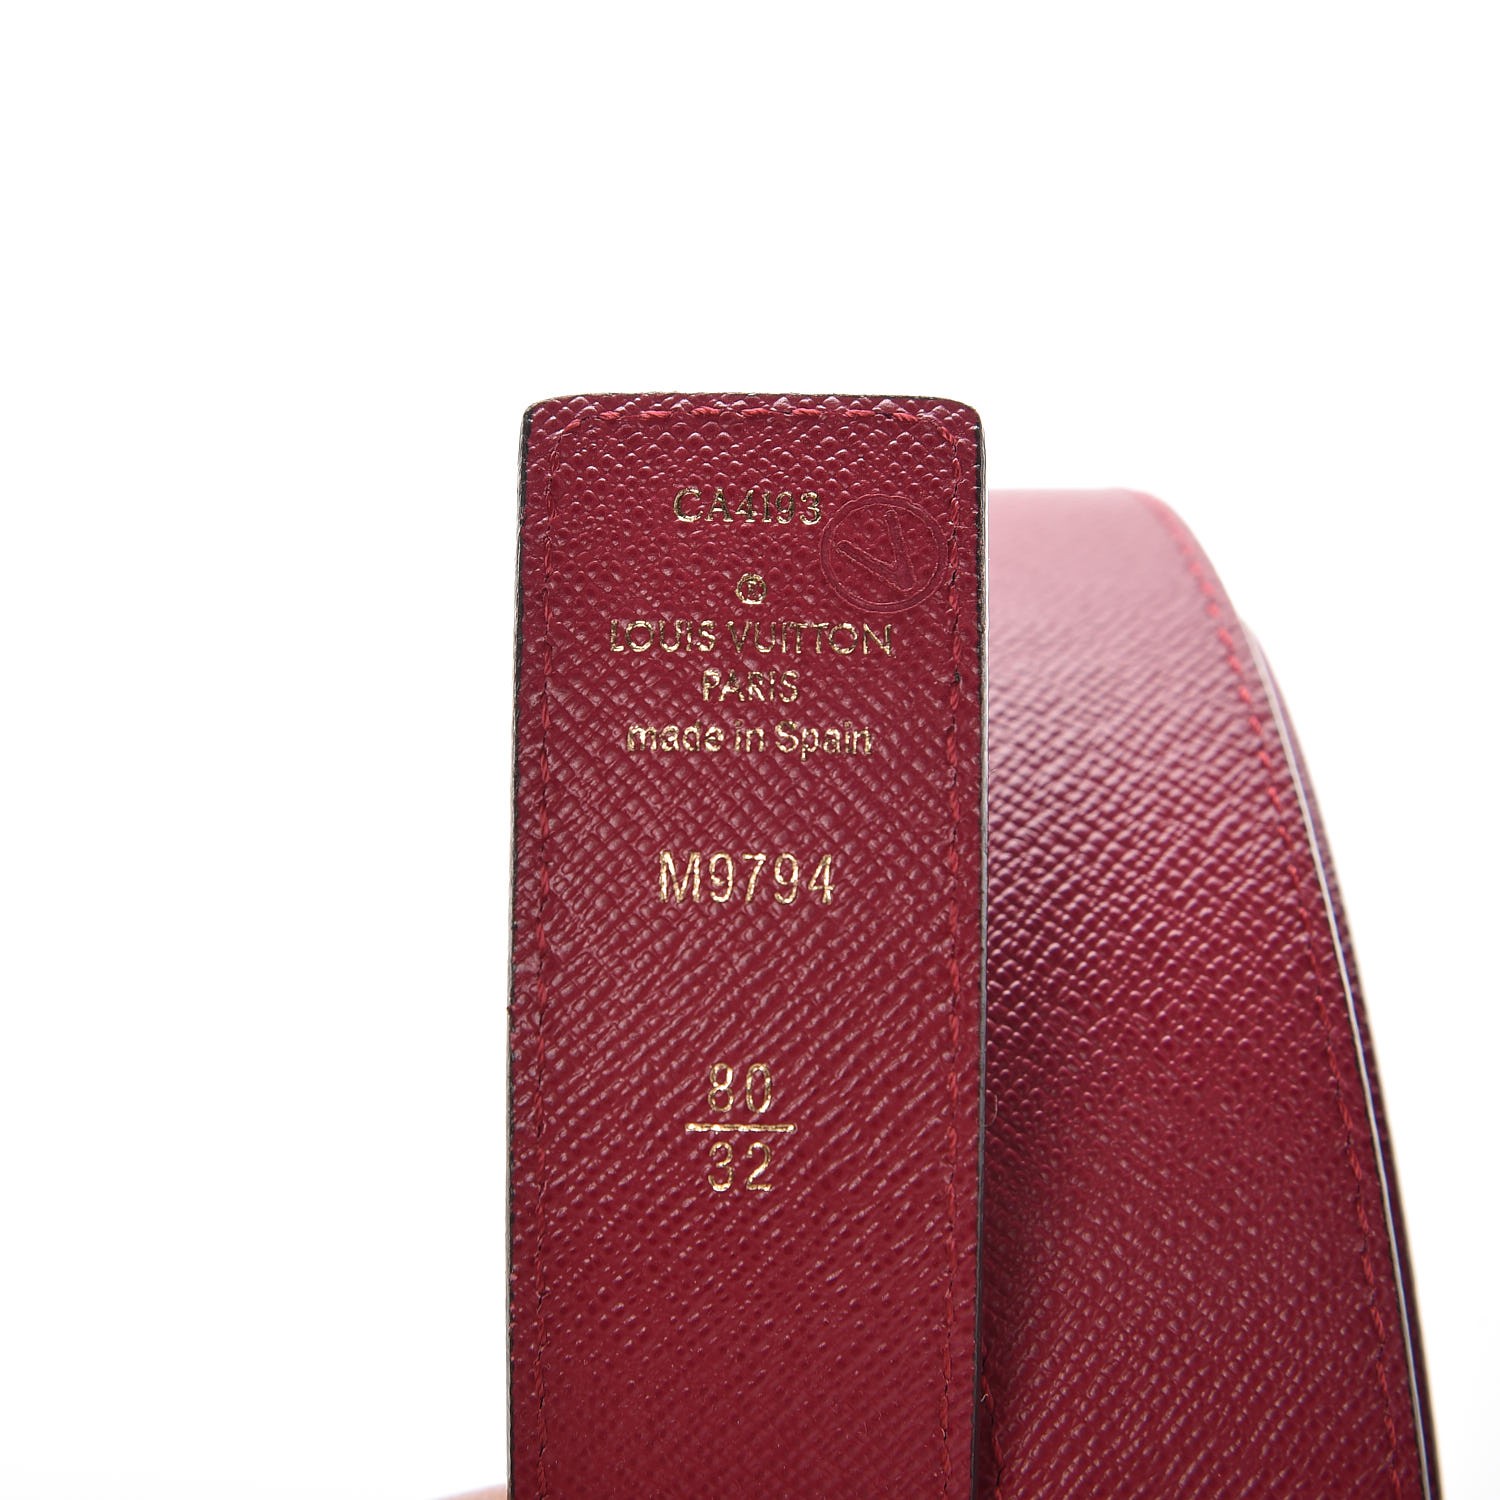 Louis Vuitton 2012 LV Initiales Belt Kit